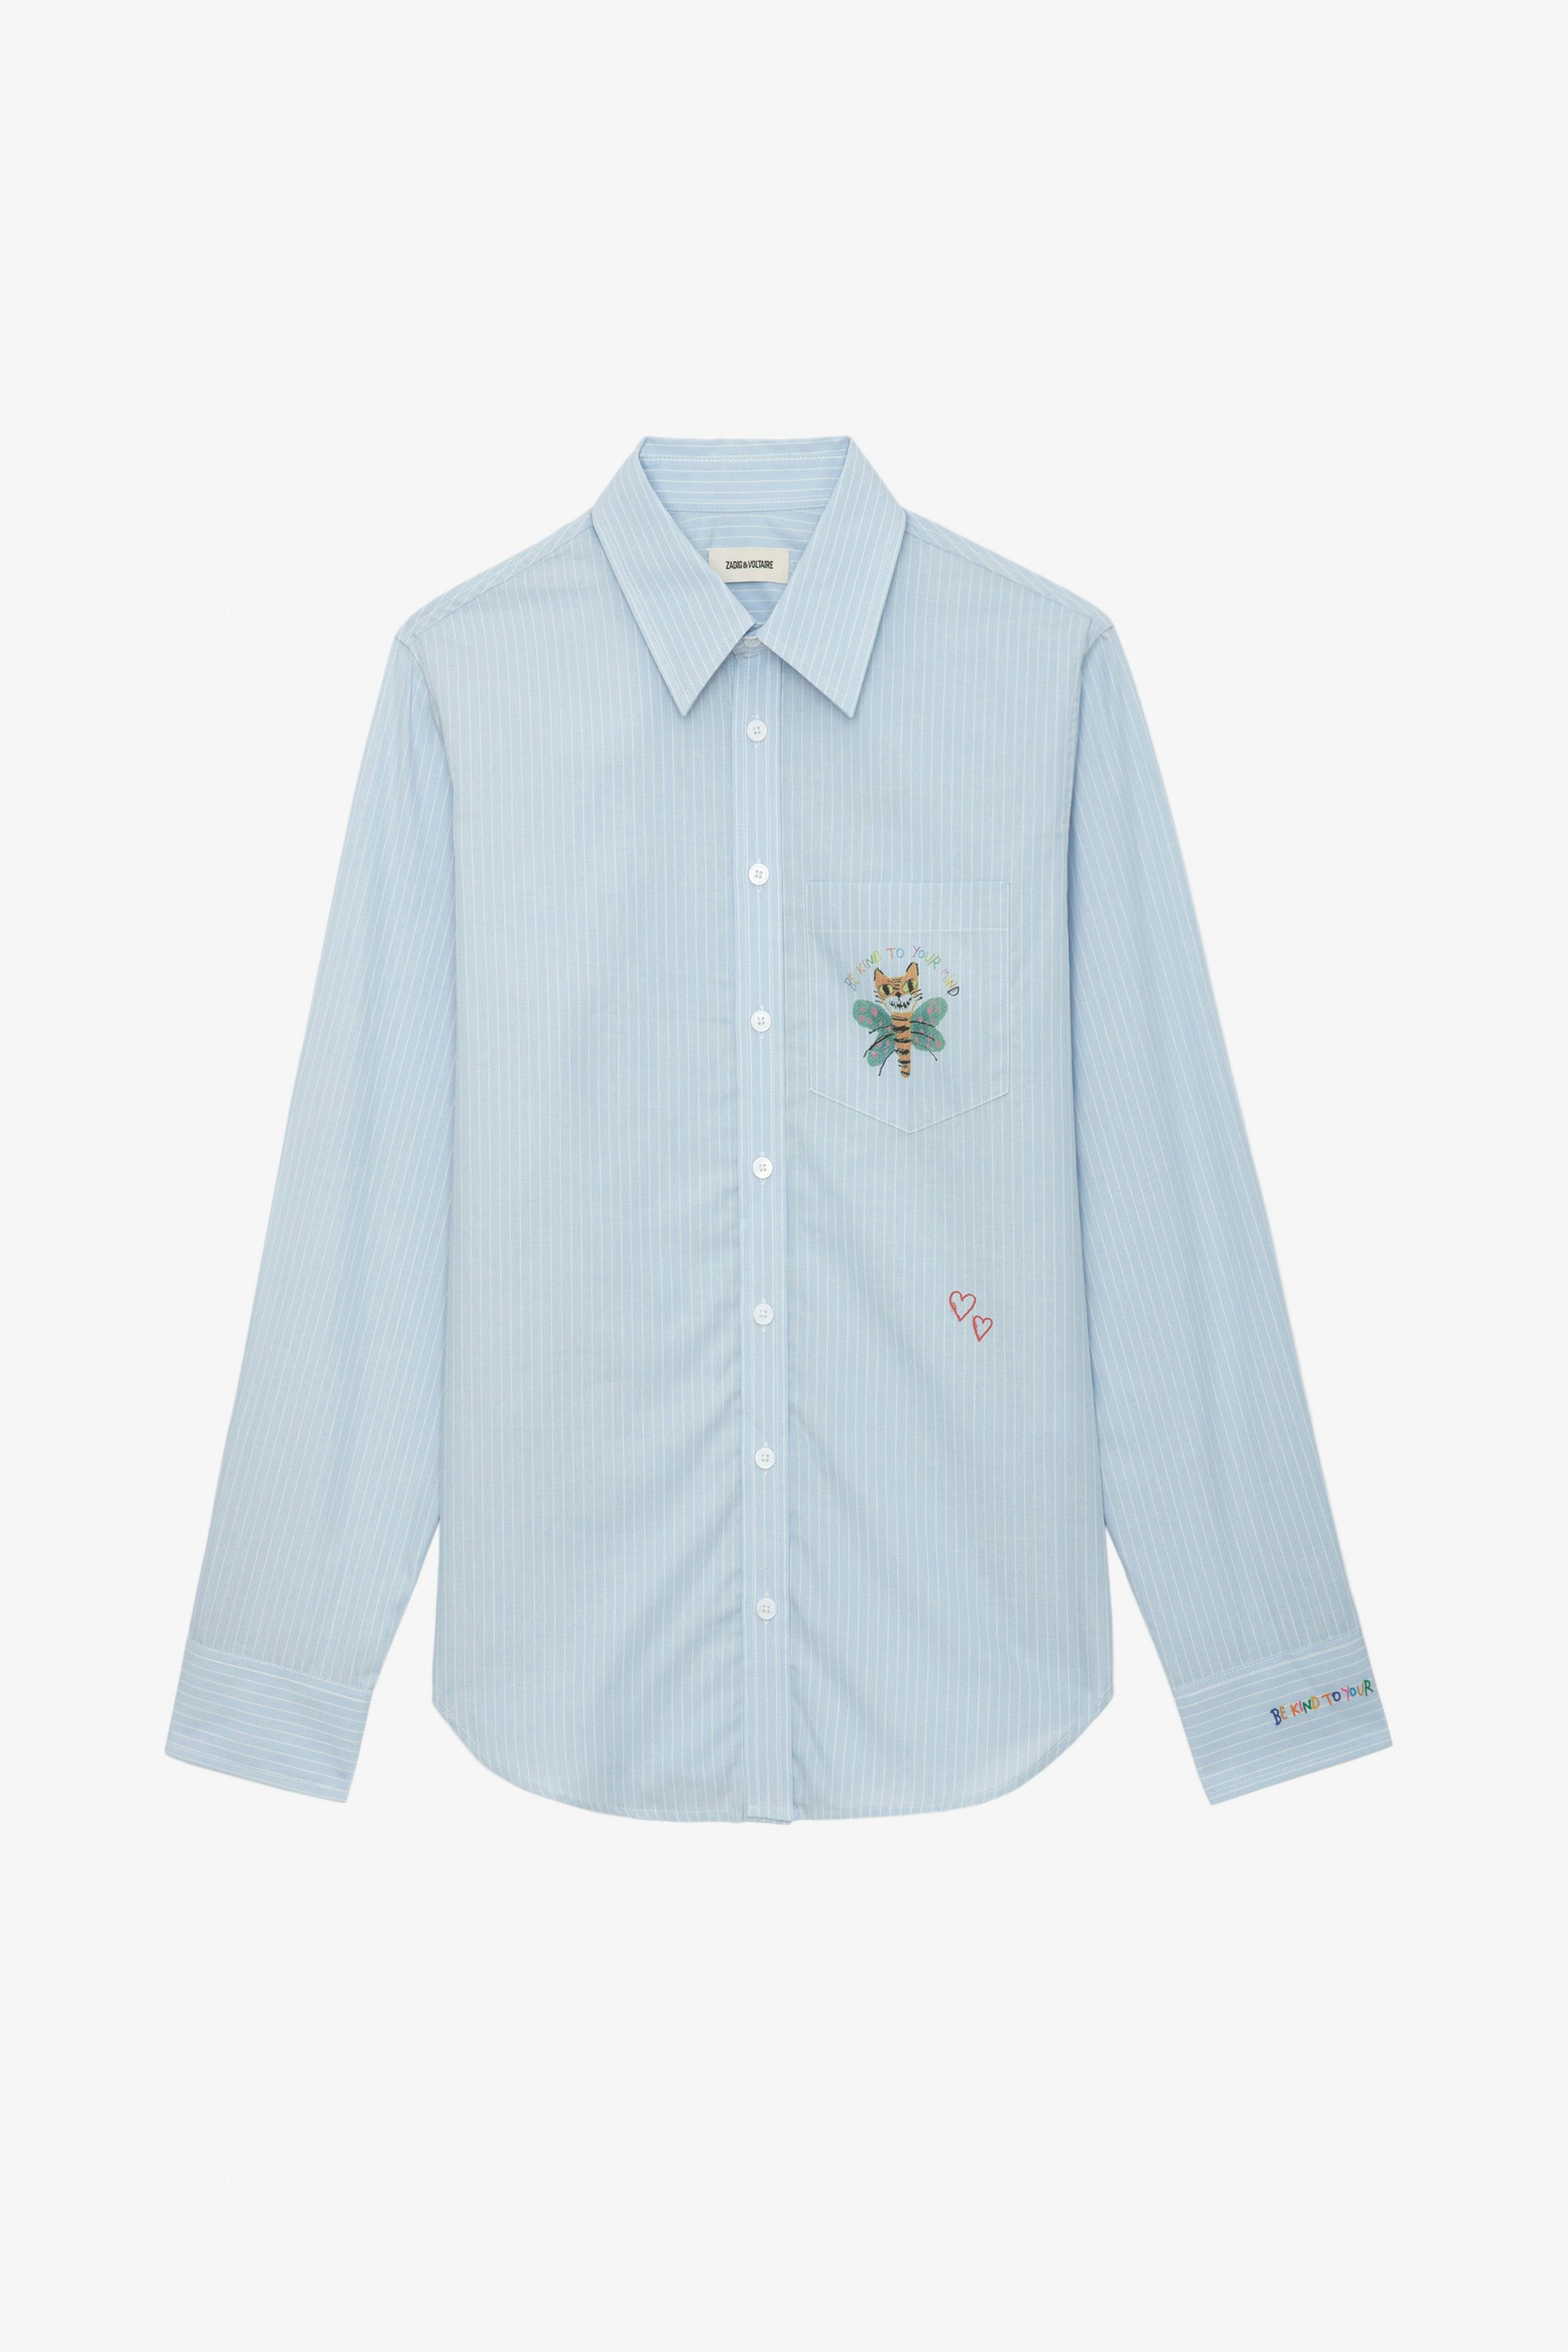 Camisa Taskiz - Camisa azul de algodón con mangas largas, rayas y detalles decorativos de Humberto Cruz.